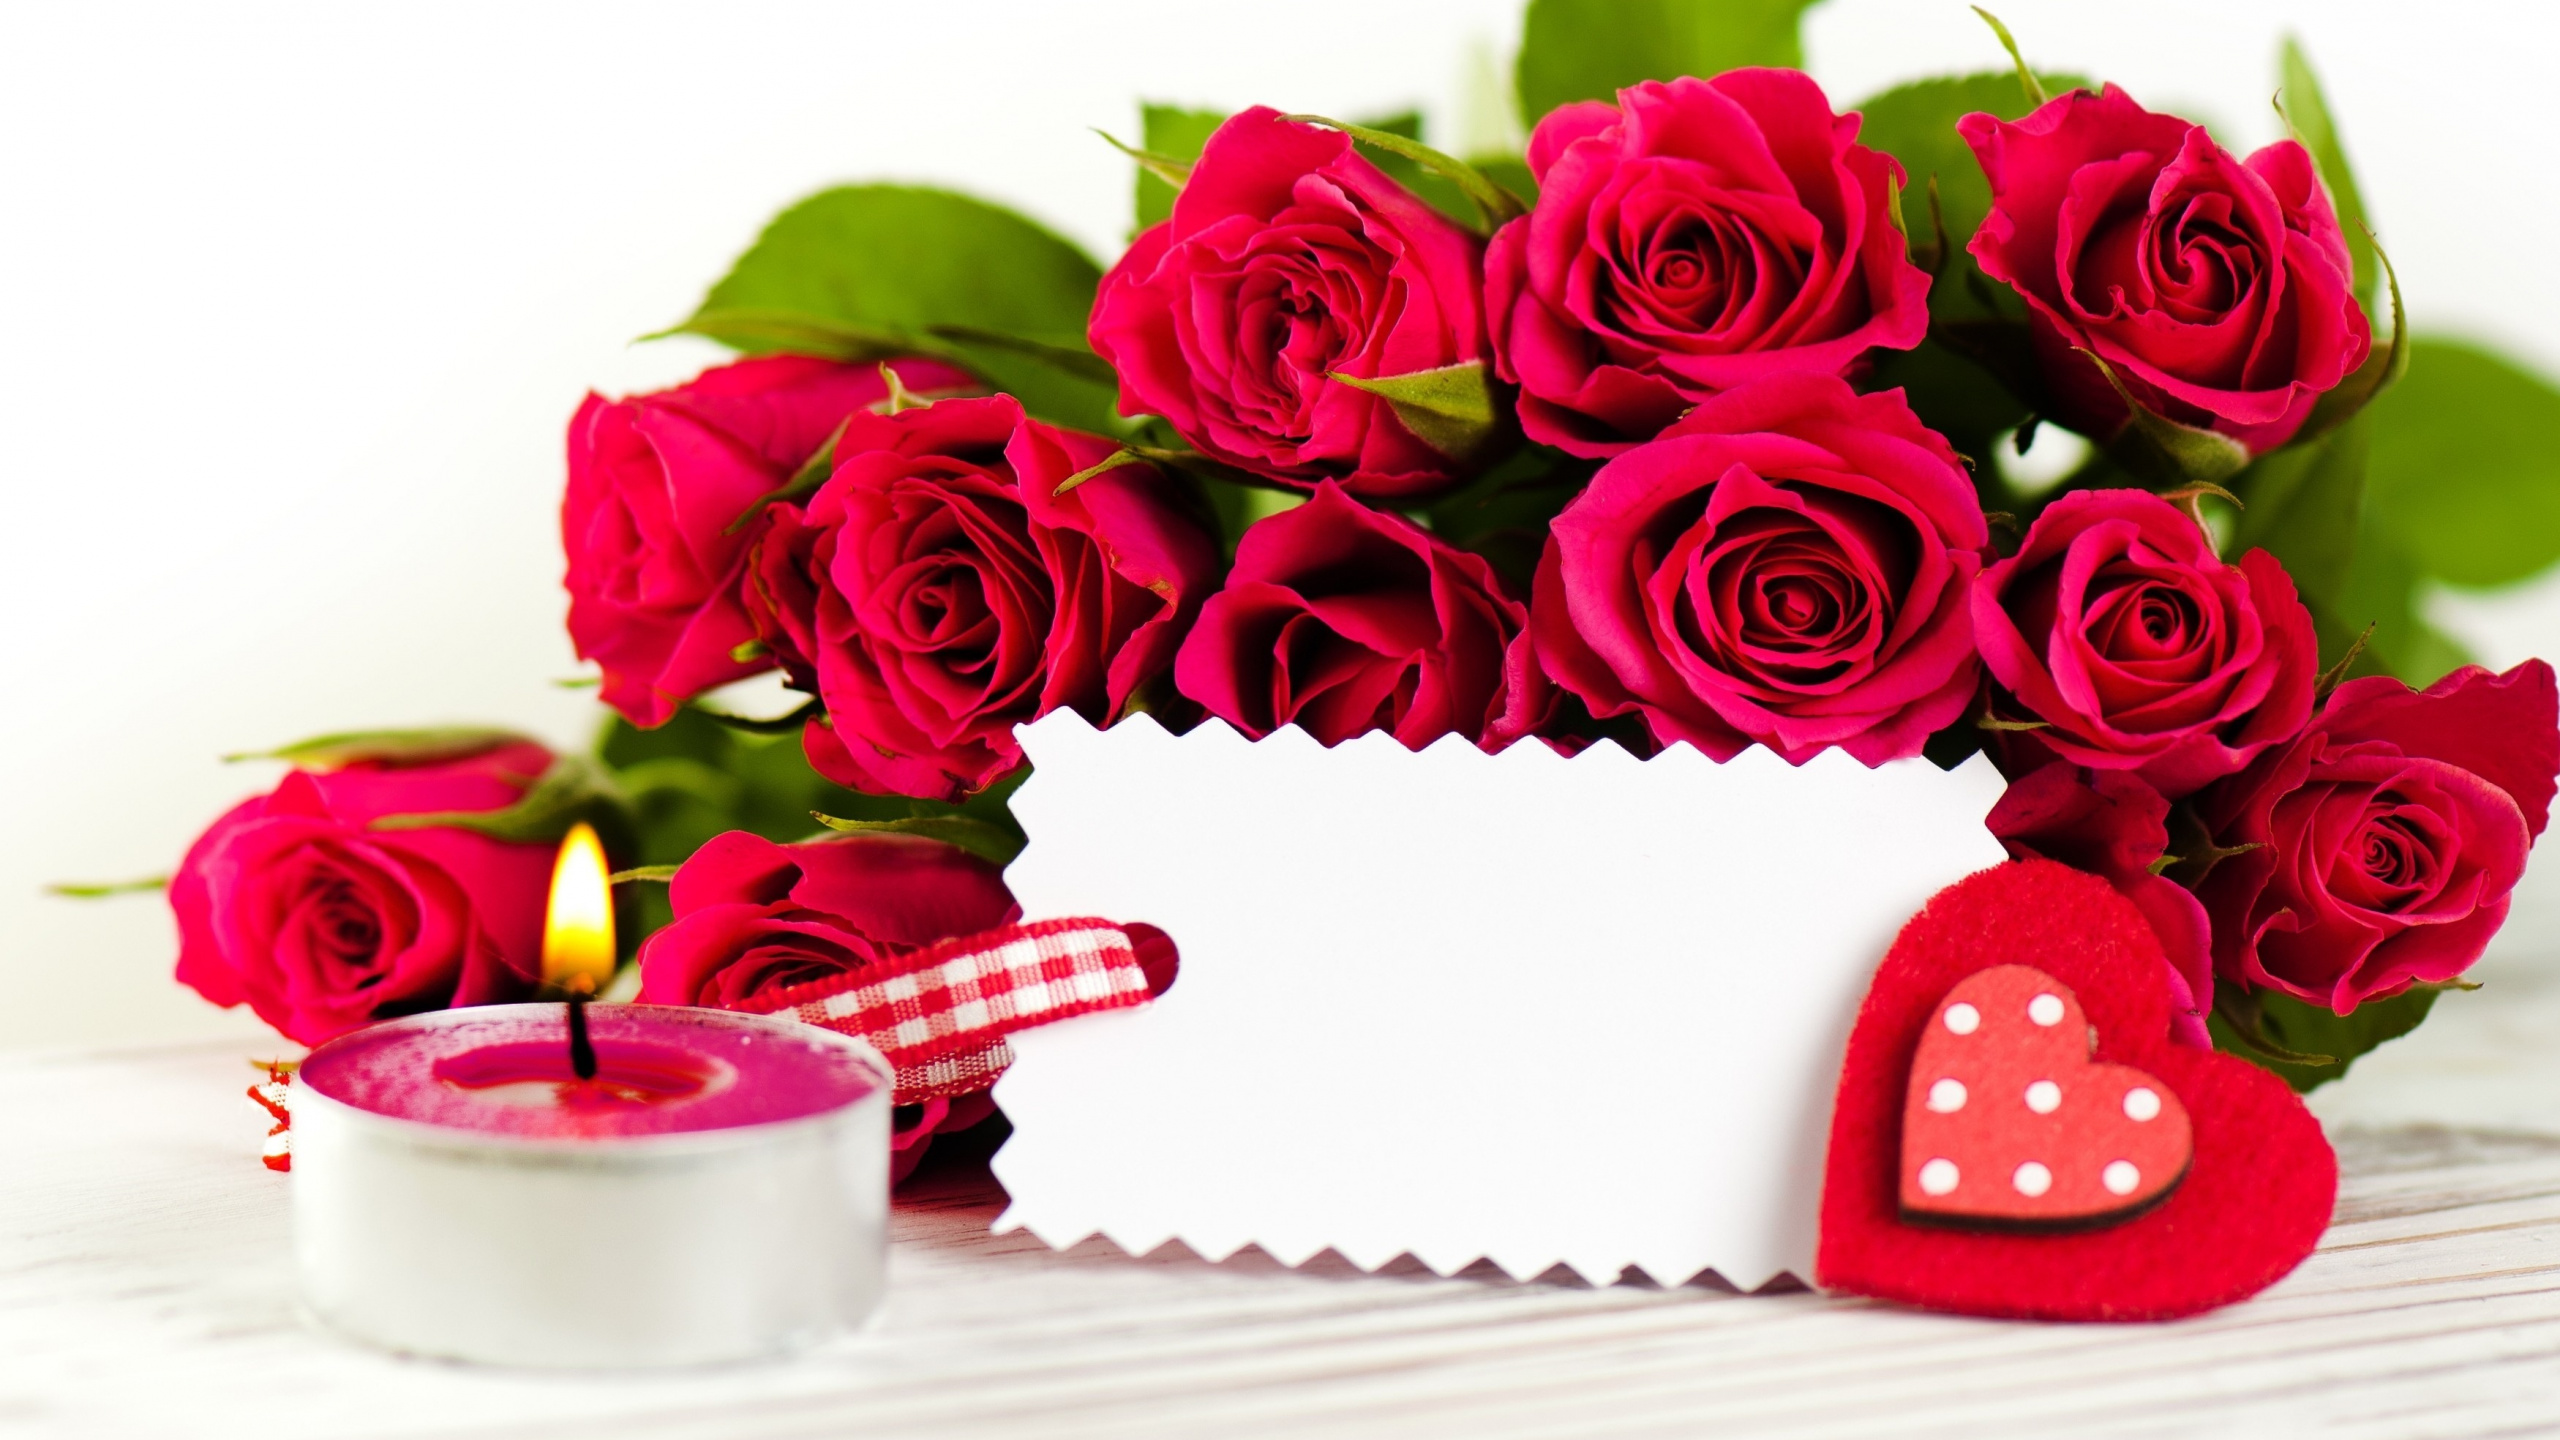 切花, 玫瑰花园, 玫瑰家庭, 结婚纪念日, 周年纪念 壁纸 2560x1440 允许